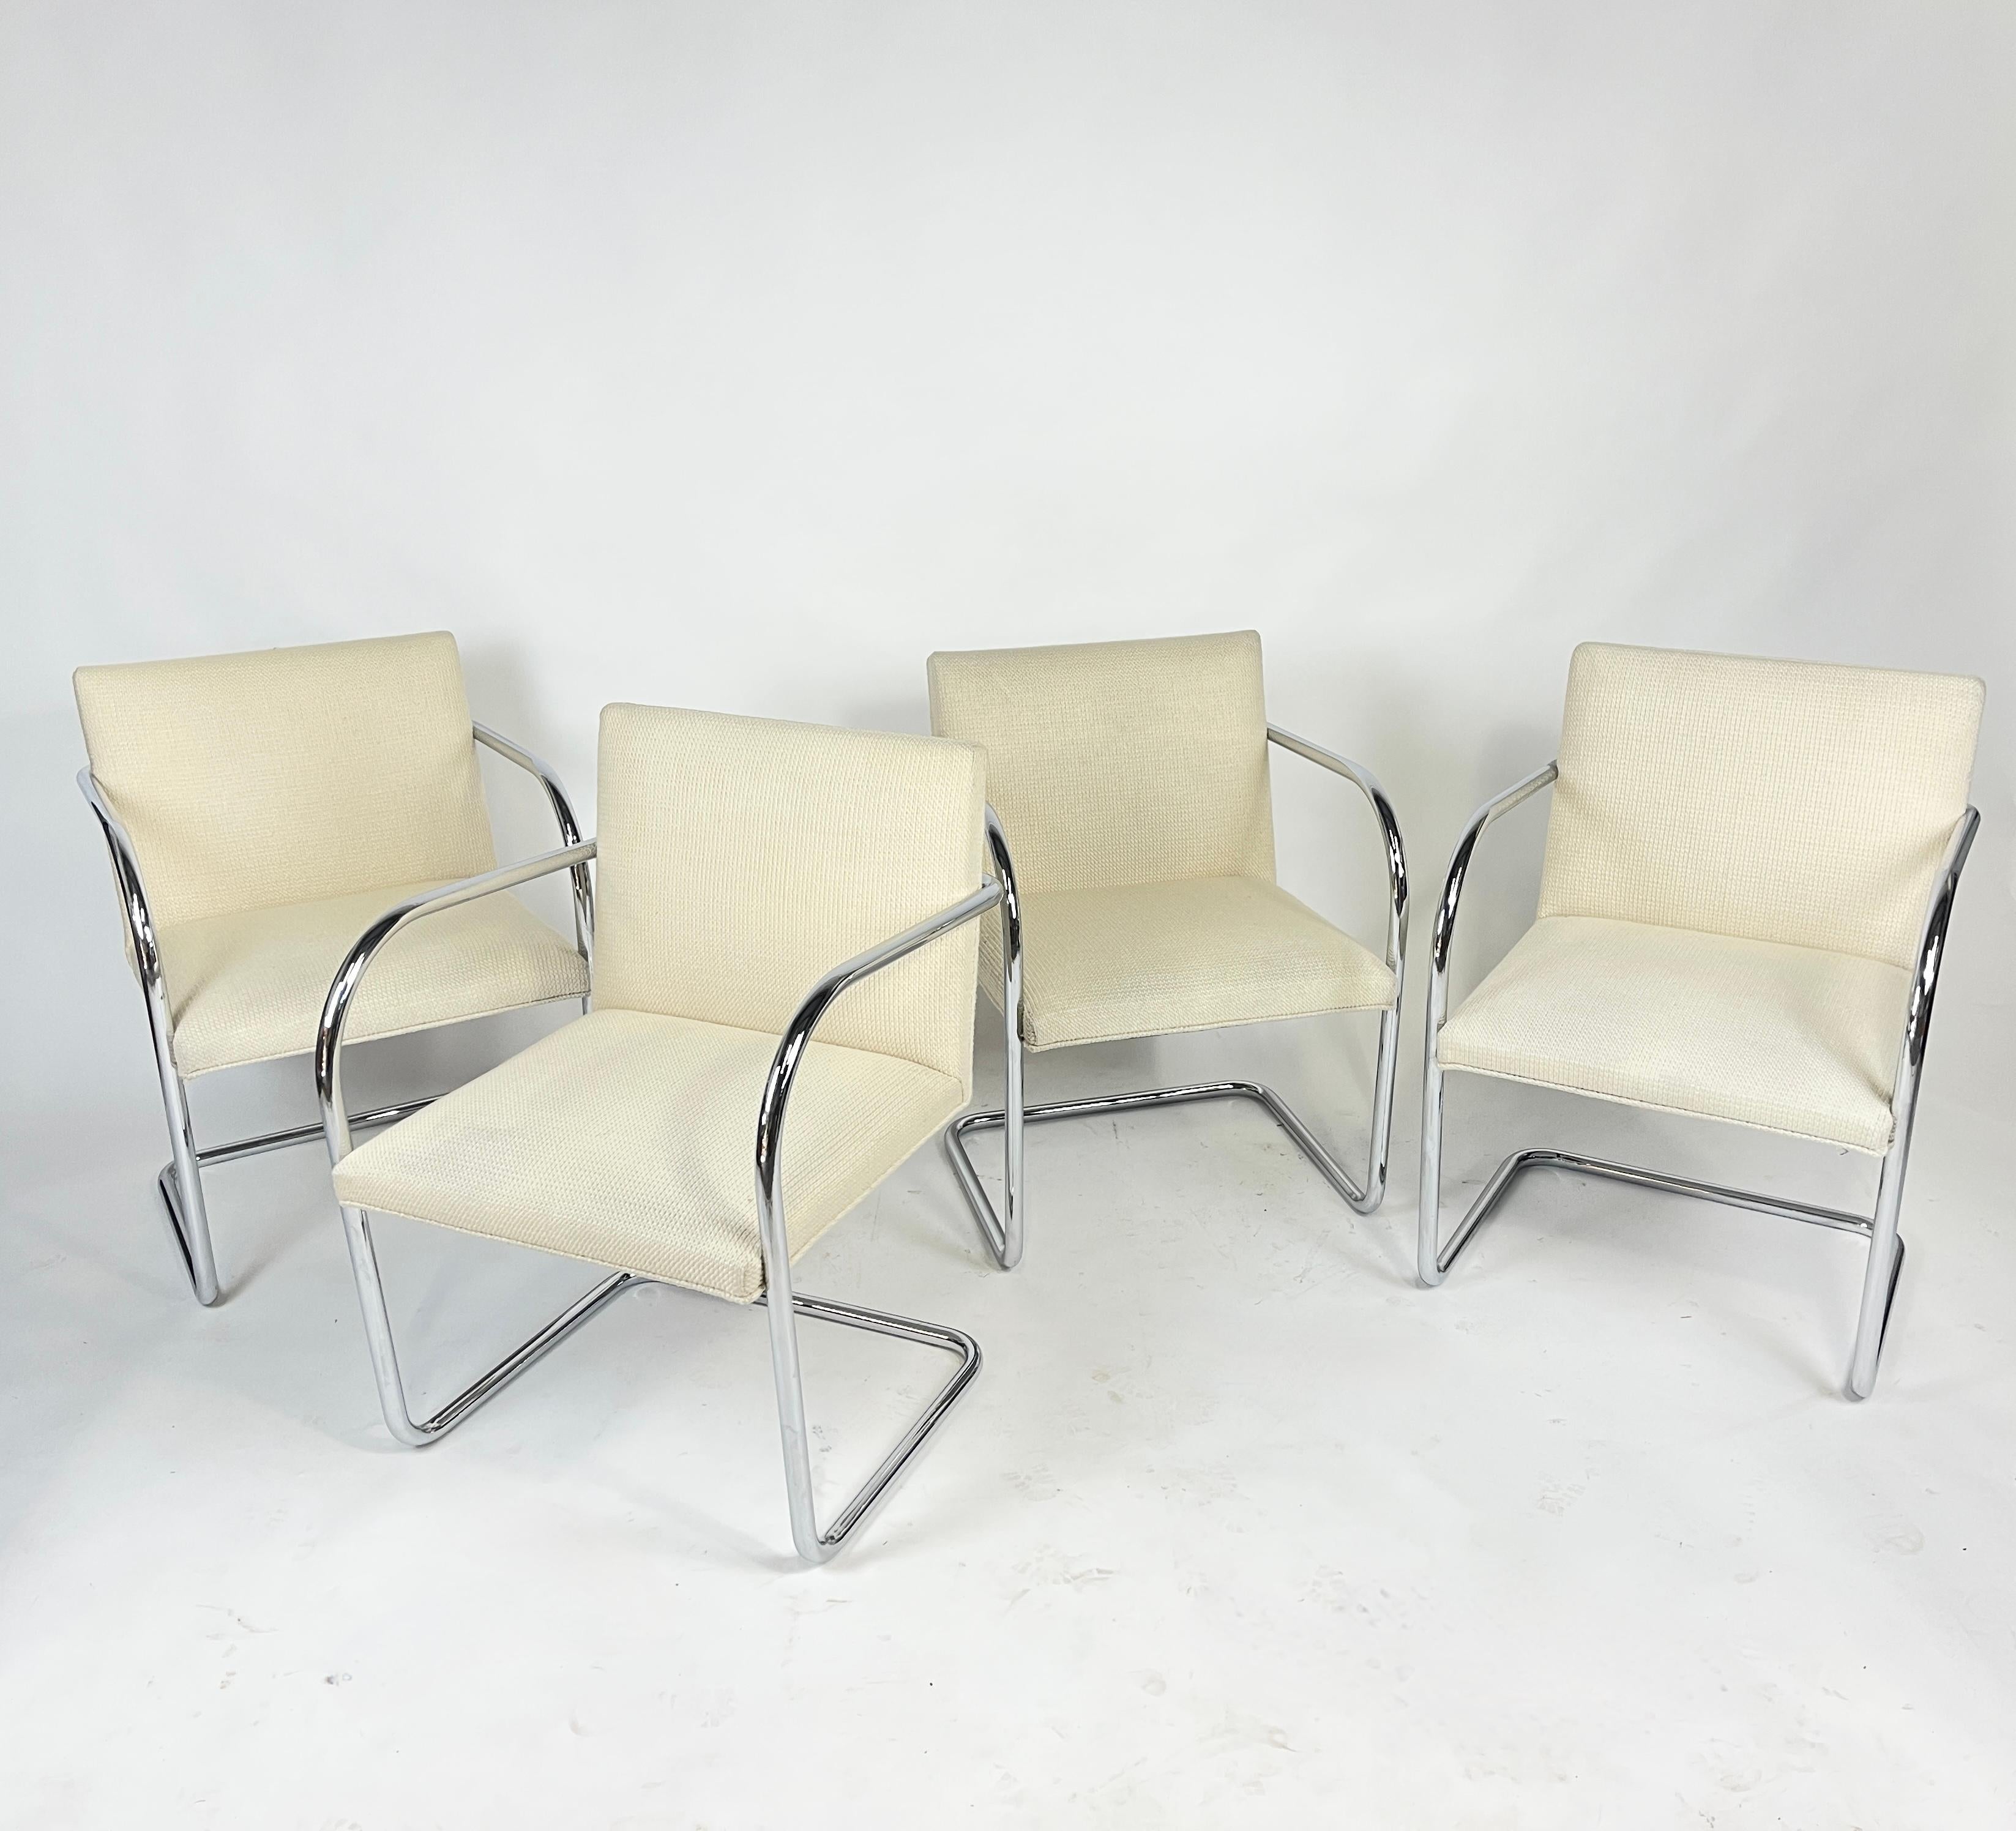 Ensemble de 4 chaises Knoll Design/One conçues par Mies Van der Rohe. Ces chaises sont revêtues de la sellerie Cato de Knoll. La couleur est 